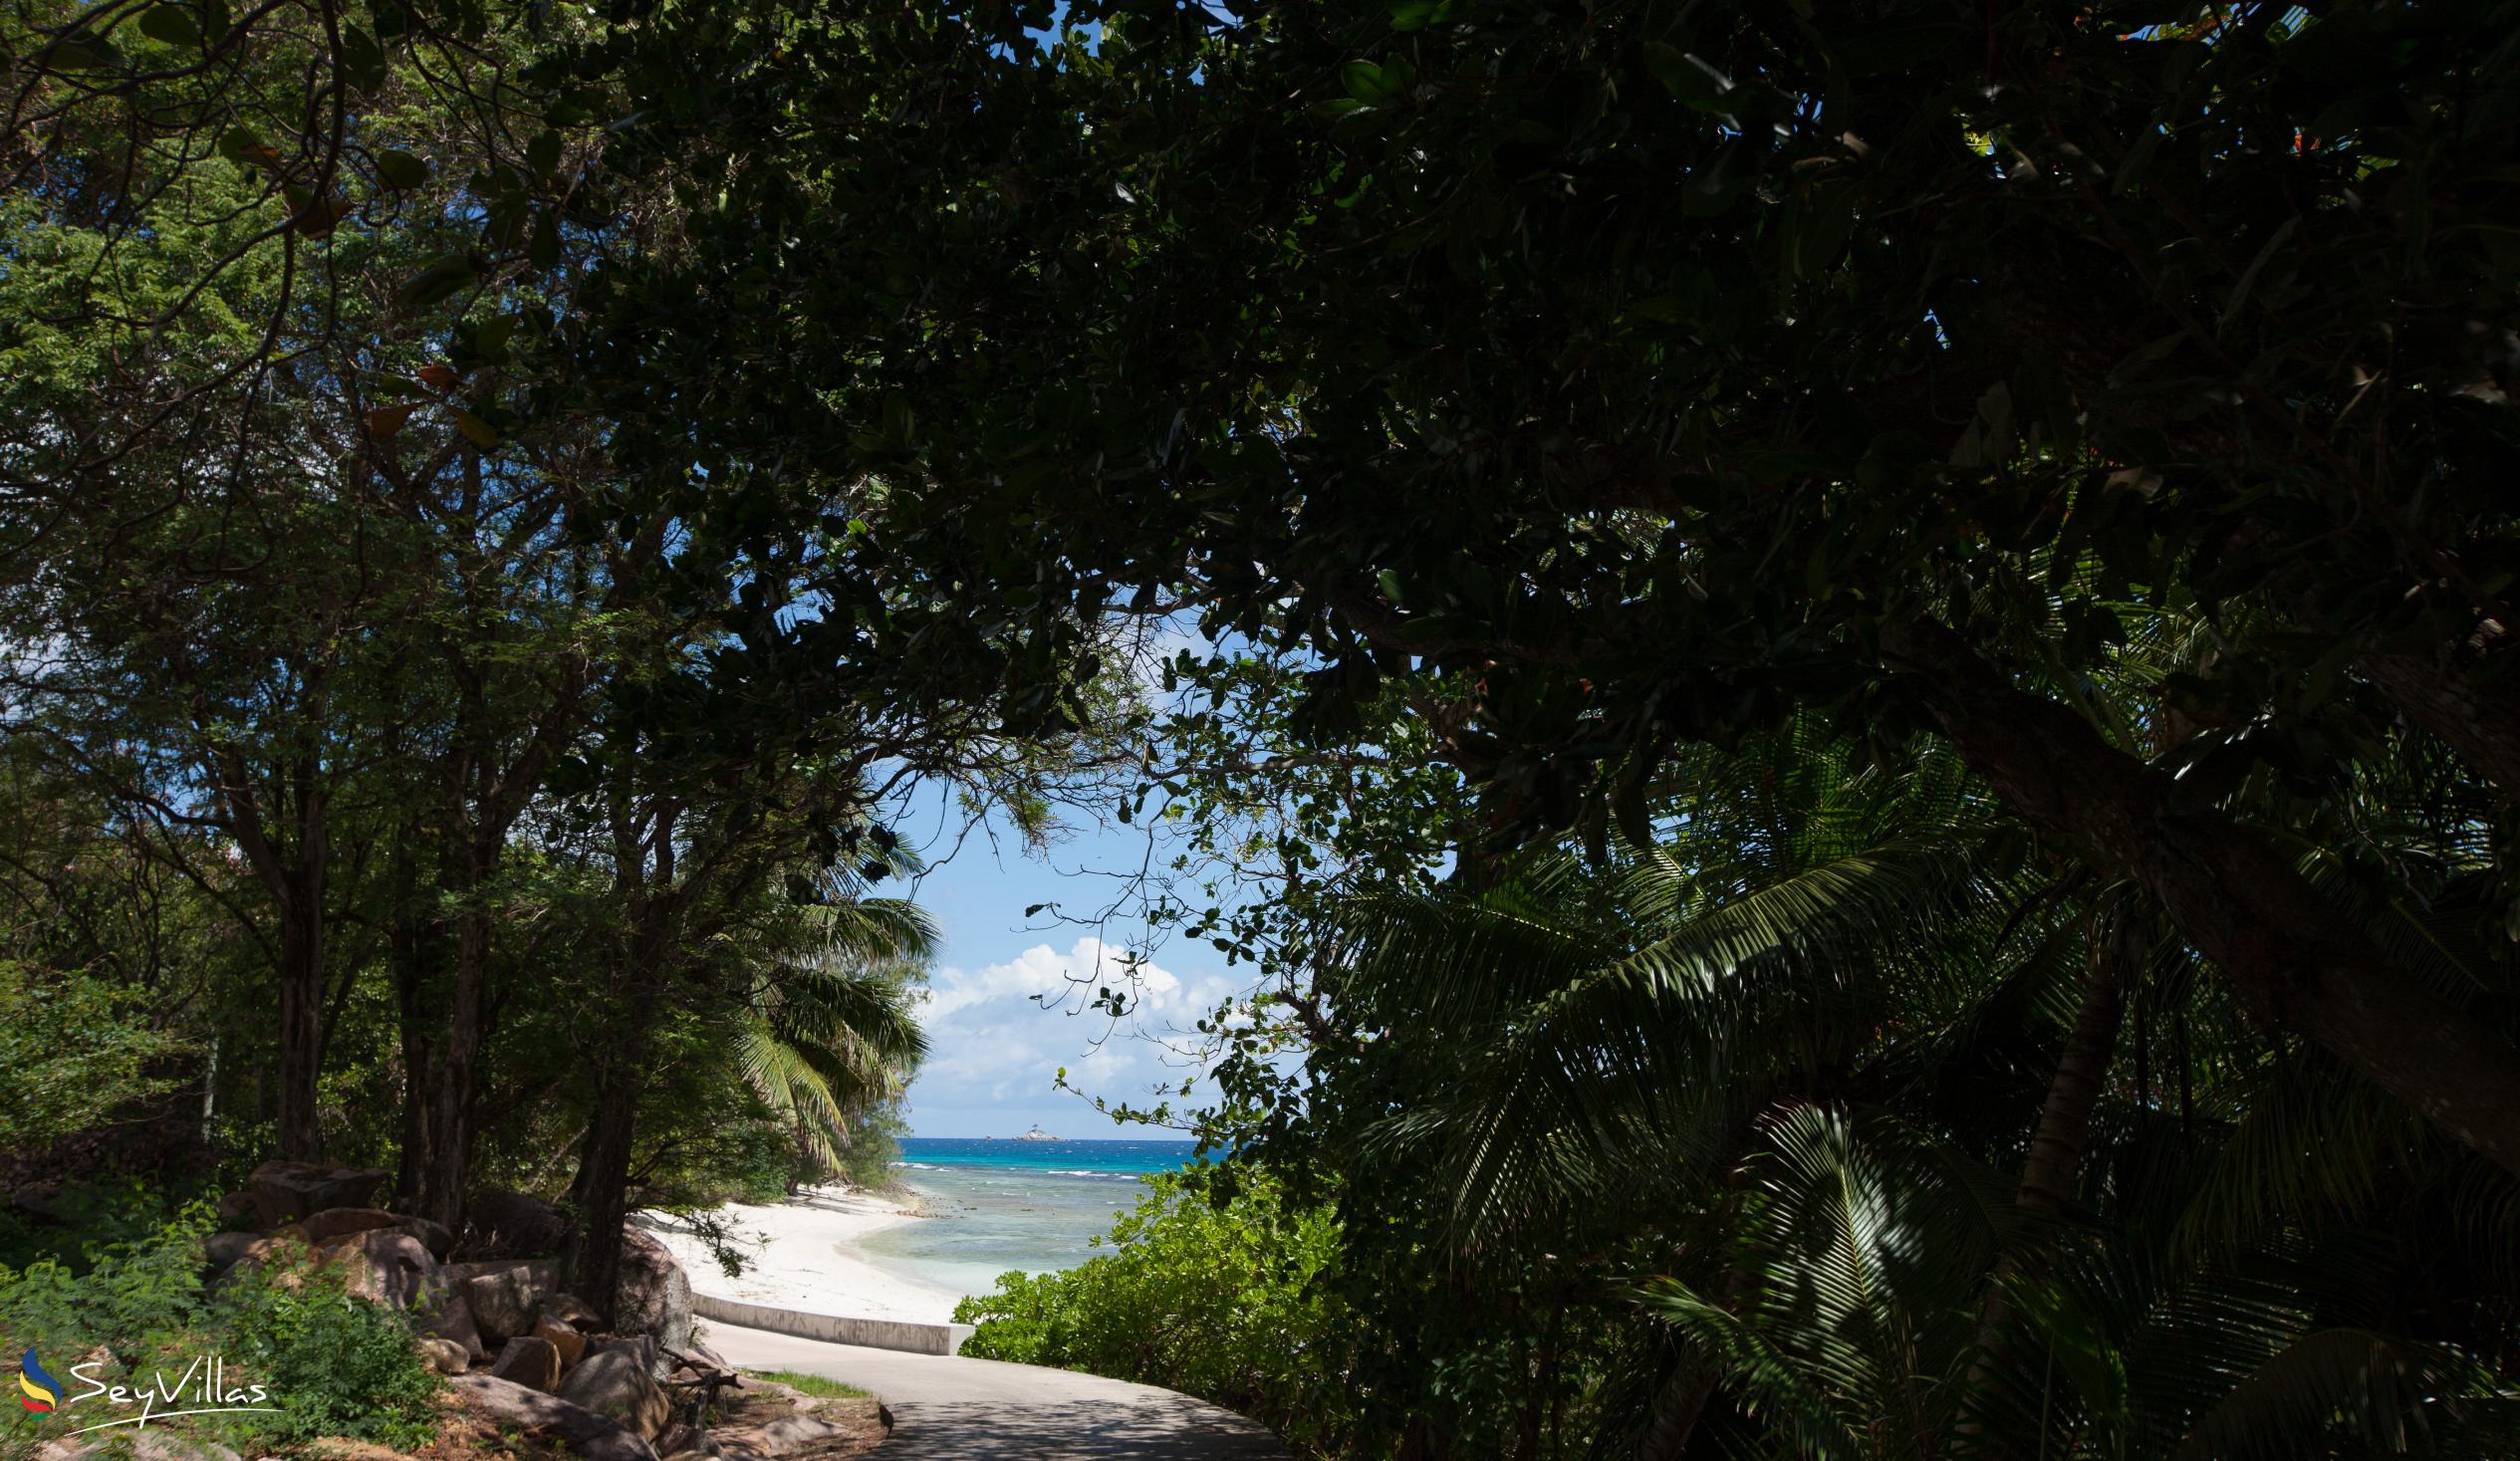 Foto 22: Secret Villa - Location - La Digue (Seychelles)